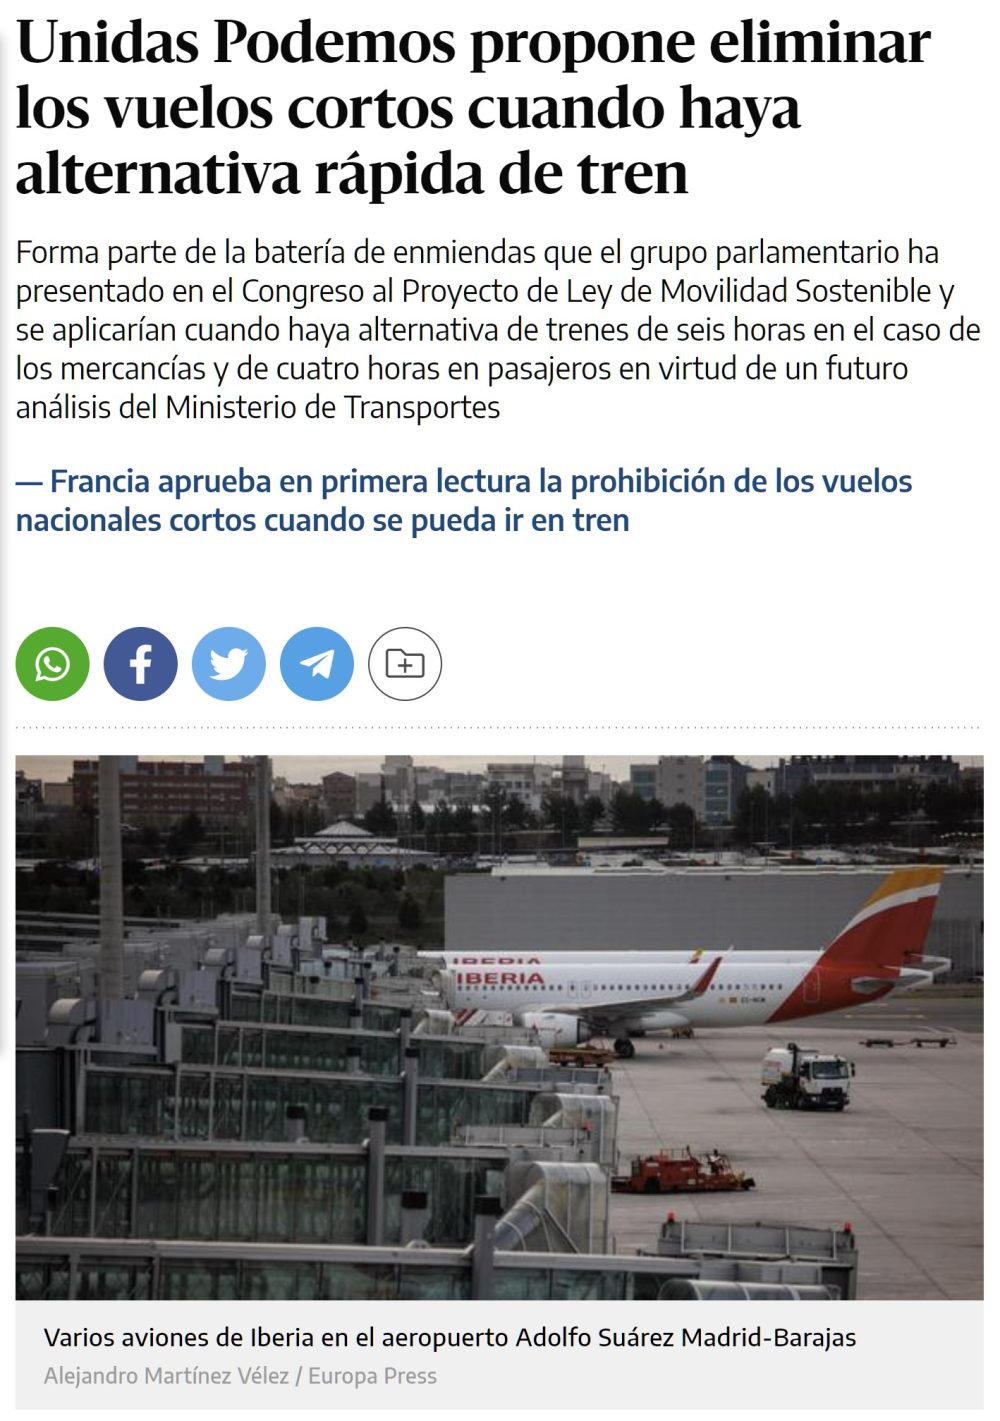 Unidas Podemos plantea prohibir los viajes en avión en todas las rutas dentro del territorio español que cuenten con alternativa ferroviaria directa y con una duración de menos de cuatro horas.